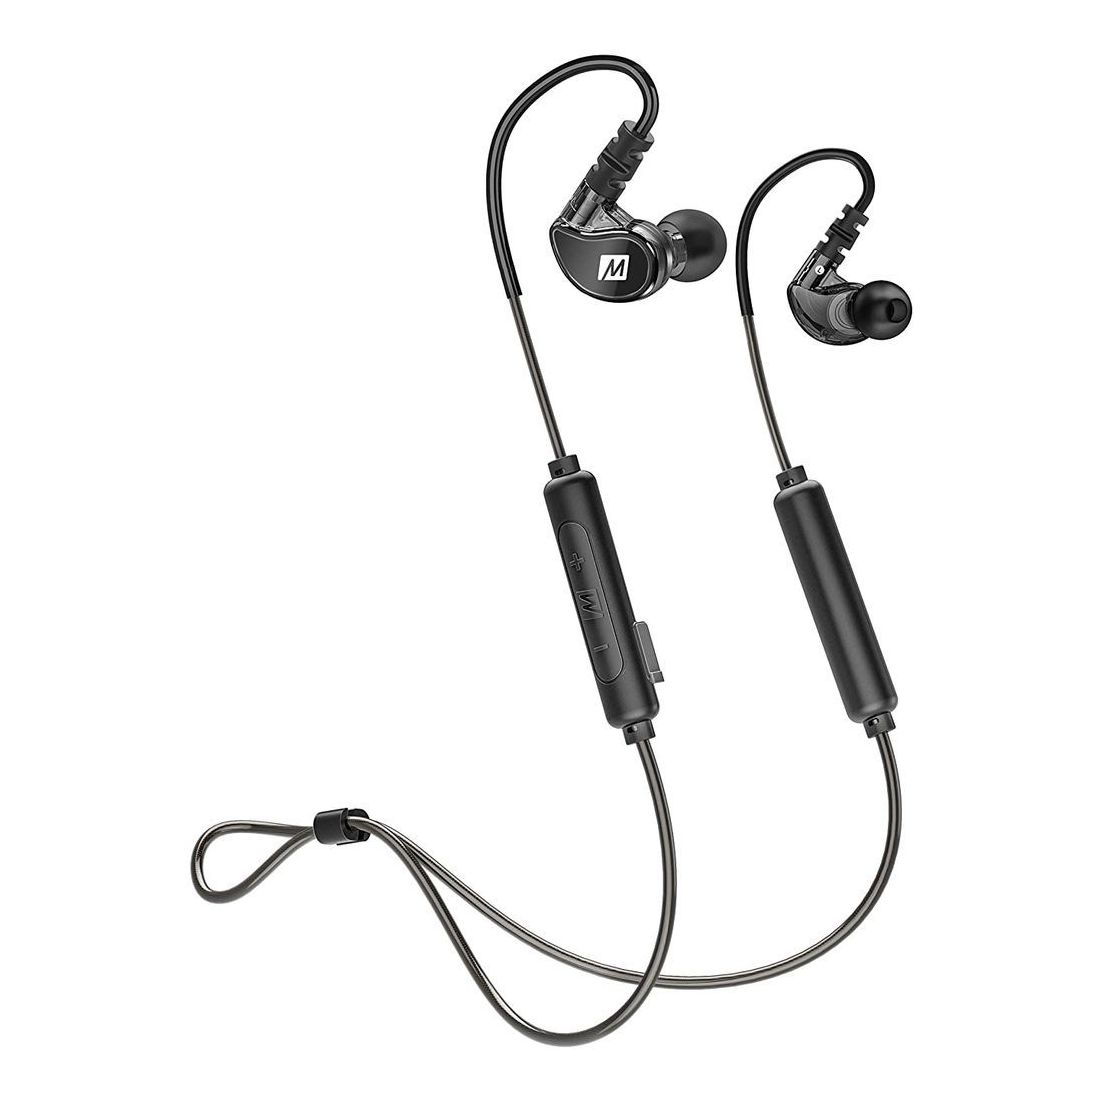 Mee Audio X6 Bluetooth Wireless Sports In-Ear Headset Black